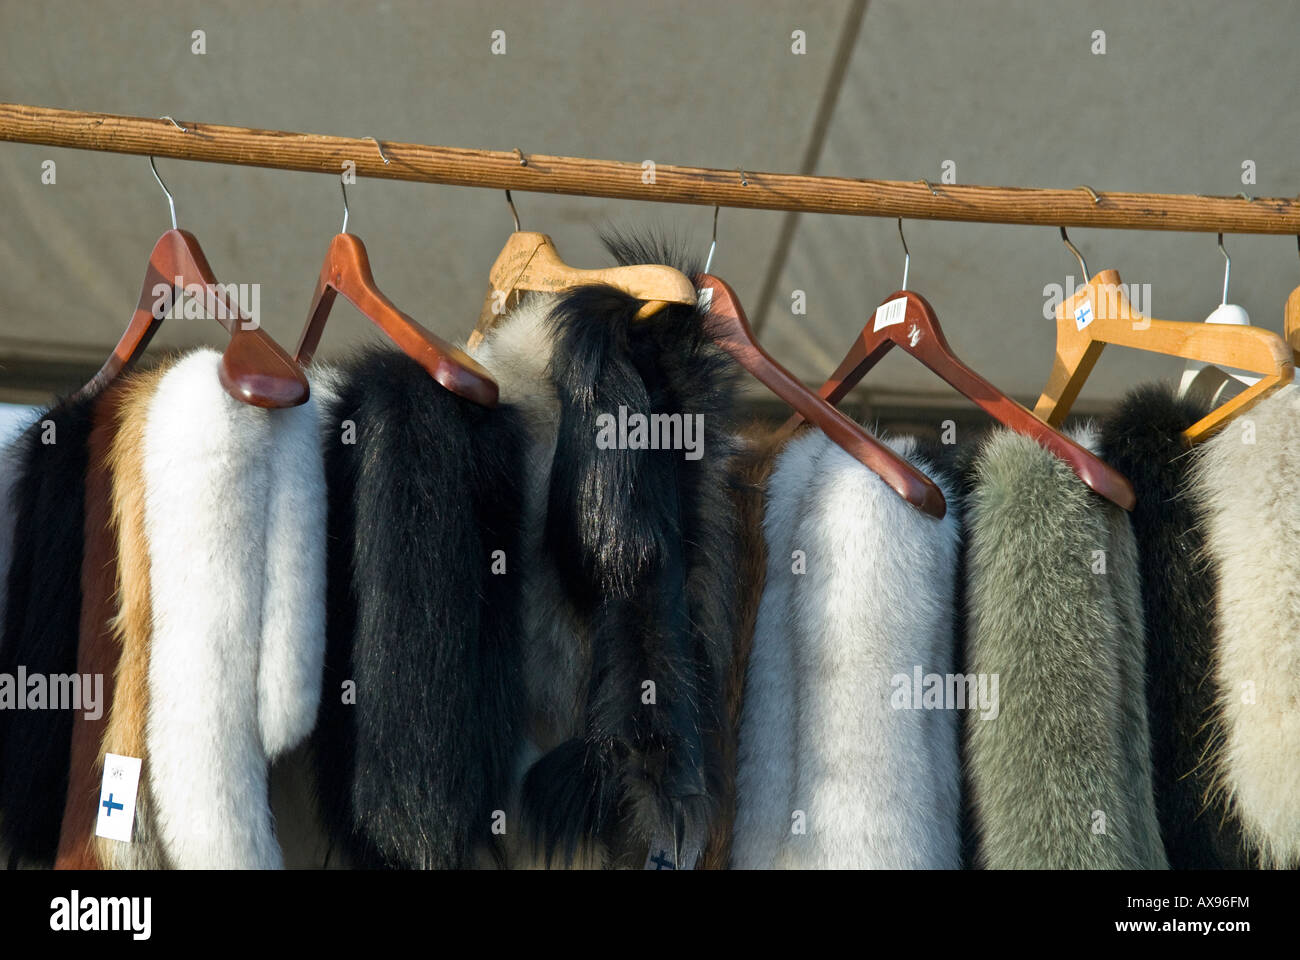 Fur coats for sale in a market in Helsinki, Finland Stock Photo